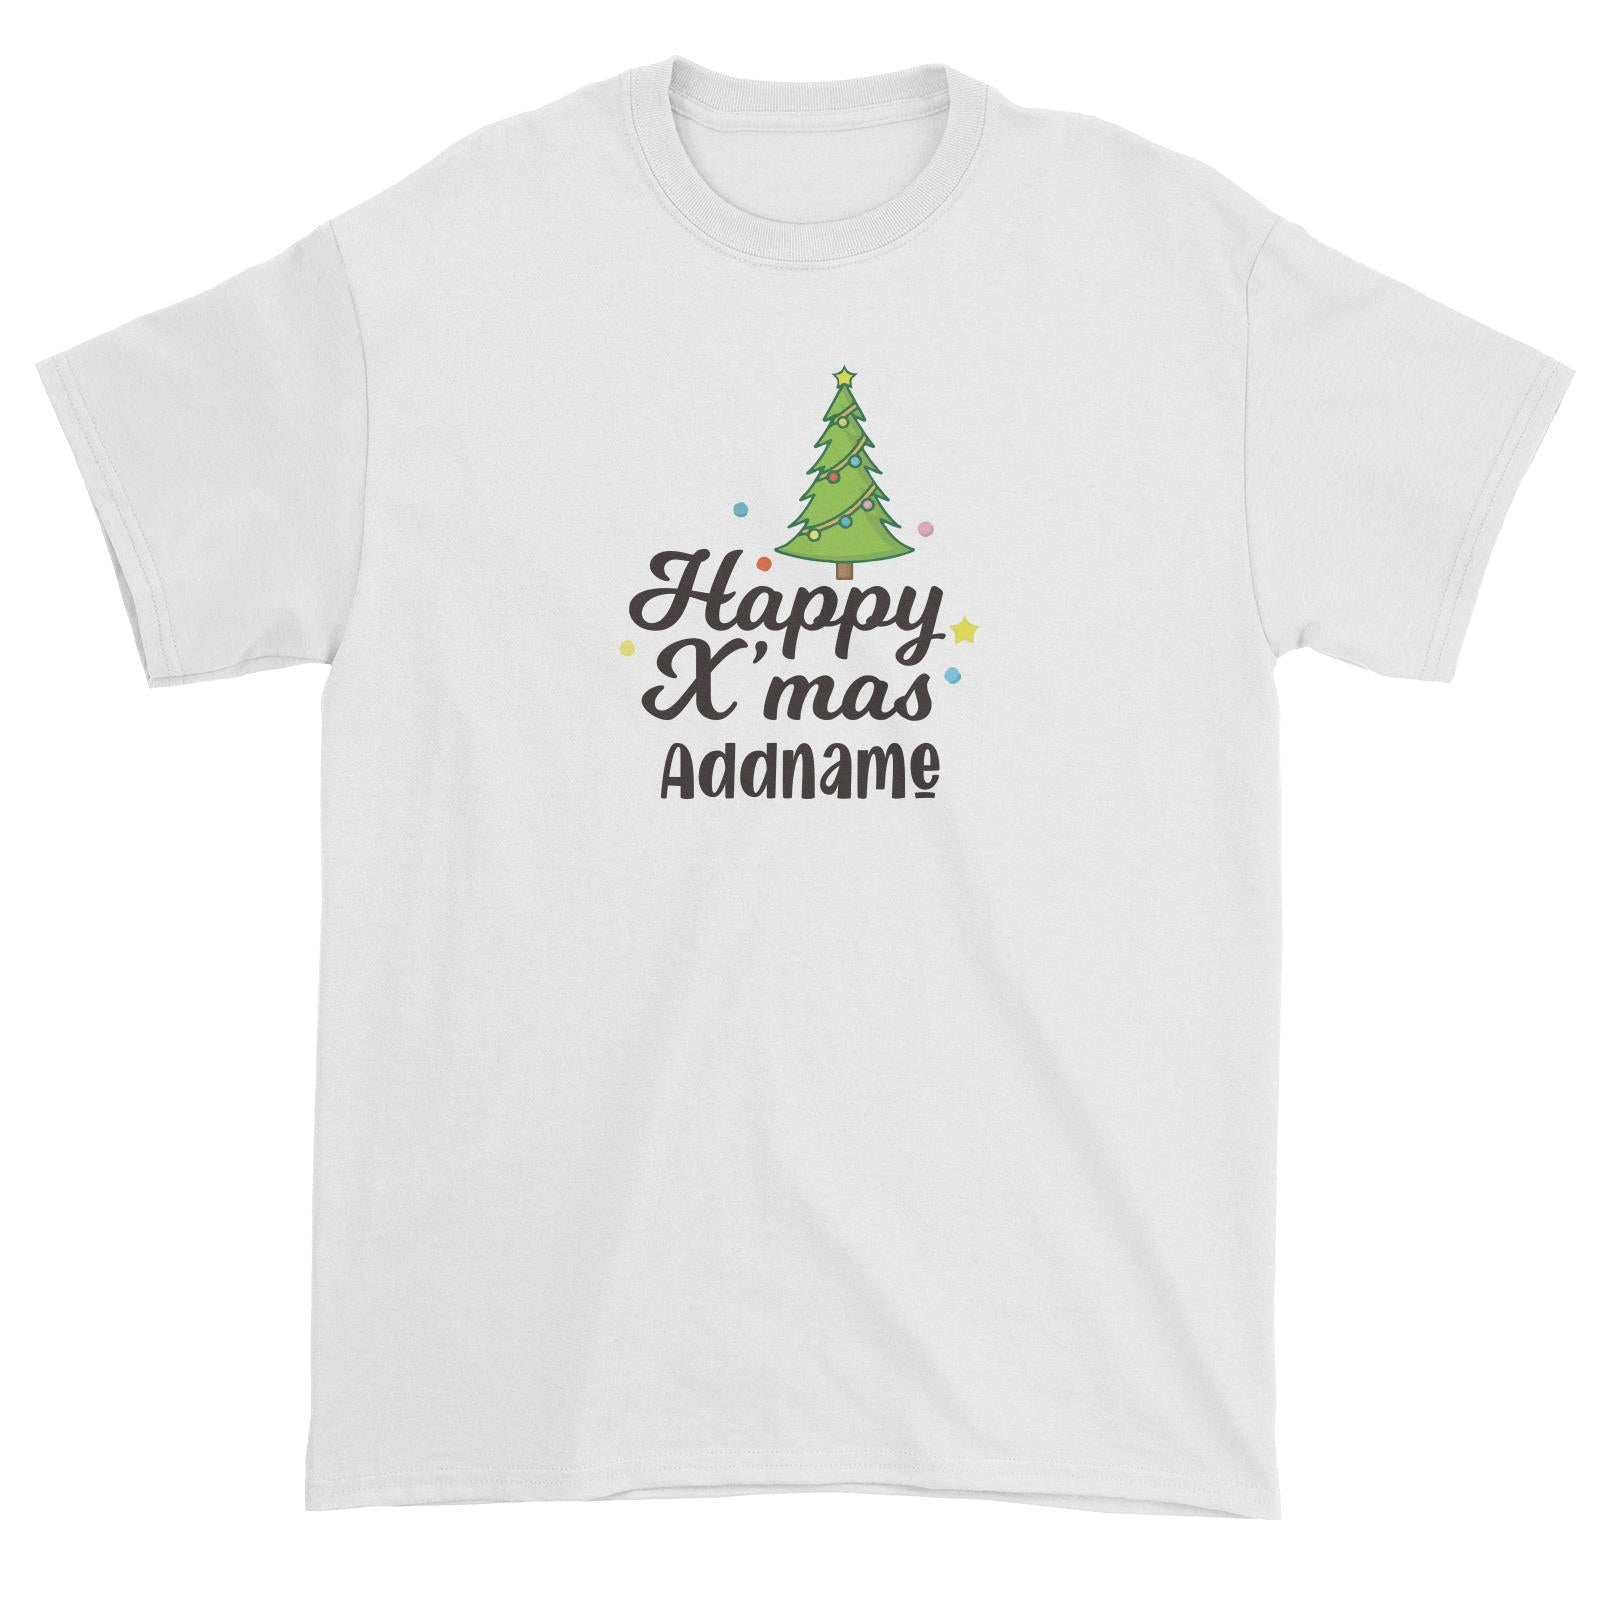 Christmas Series Christmas Tree Happy X'mas Unisex T-Shirt